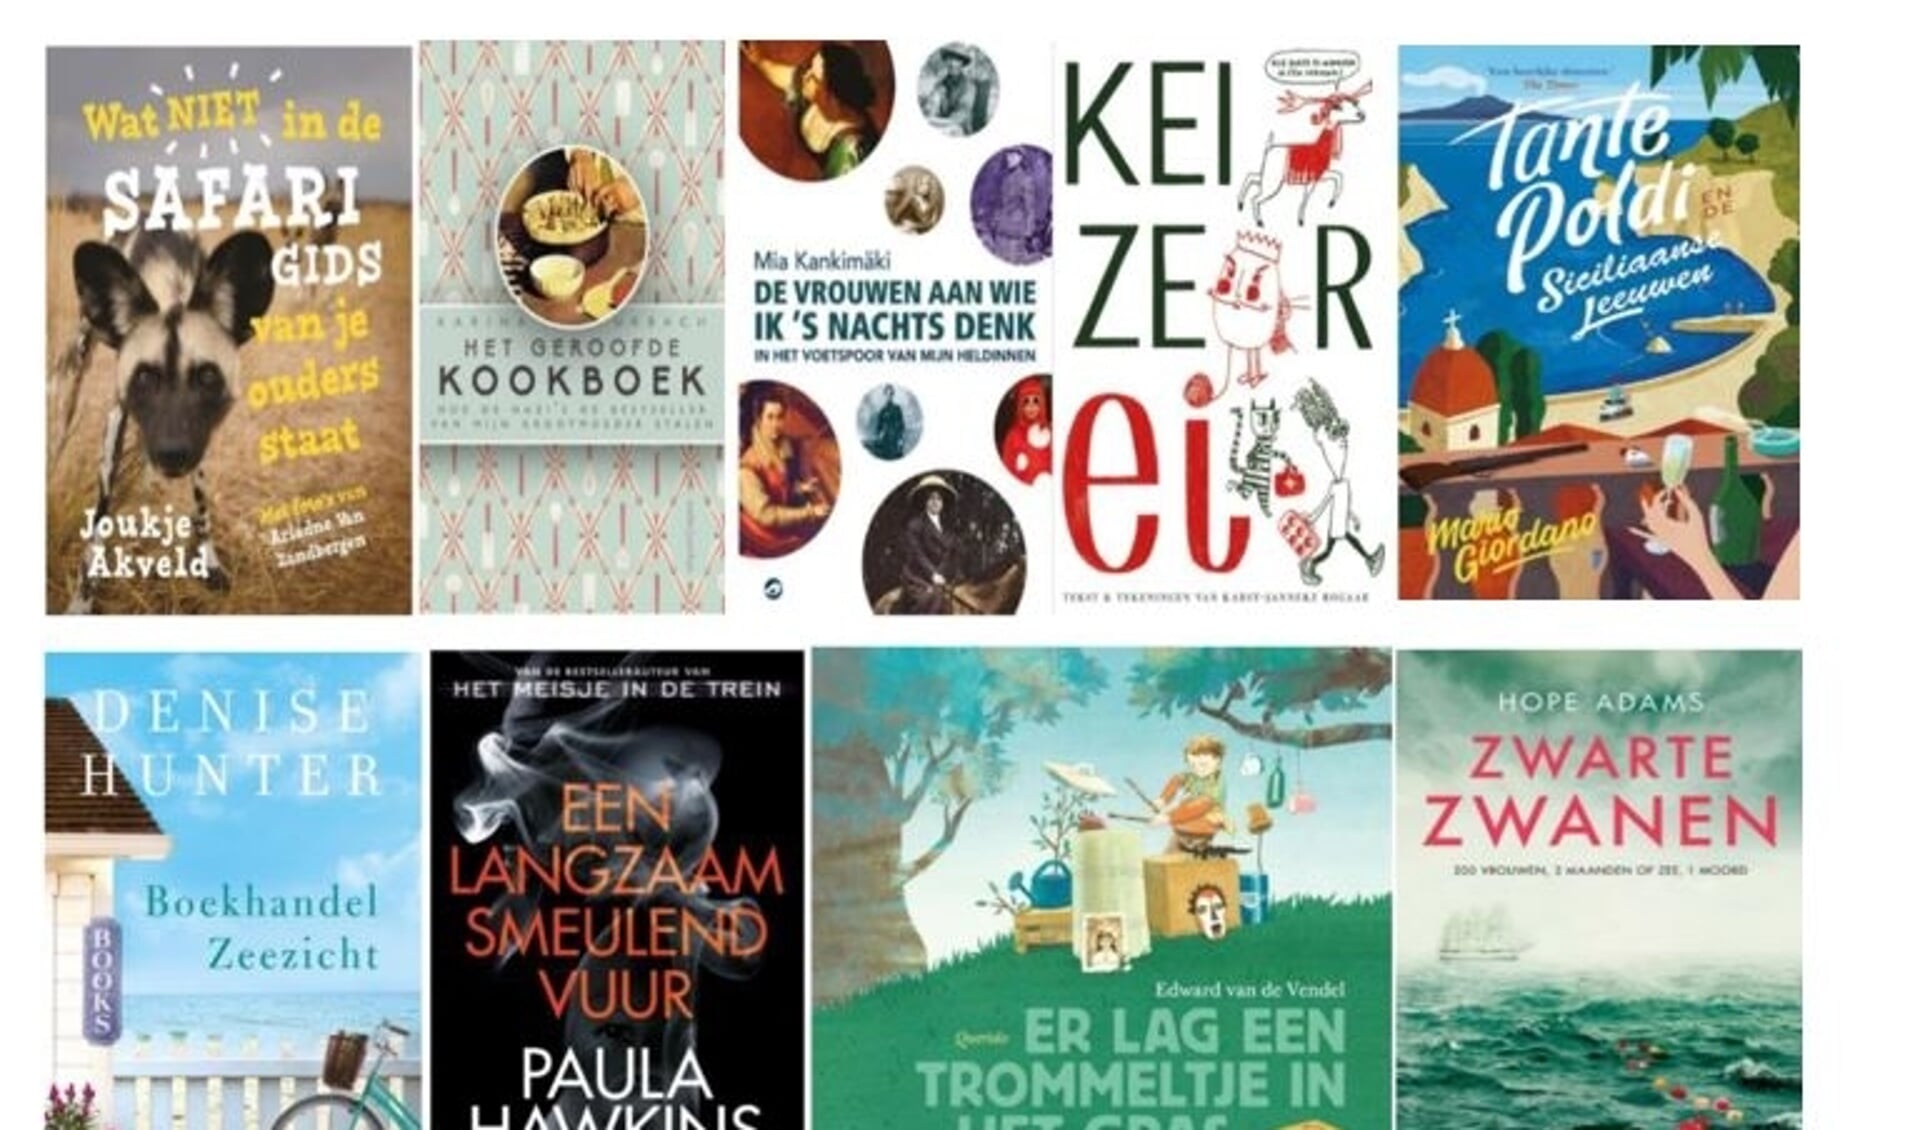 Hanneke de Waal van bibliotheek Voorschoten heeft weer tien toppers op een rij gezet. Alle boeken zijn natuurlijk te leen bij de bieb aan de Wijngaardenlaan 4. Meer informatie op obvw.nl.